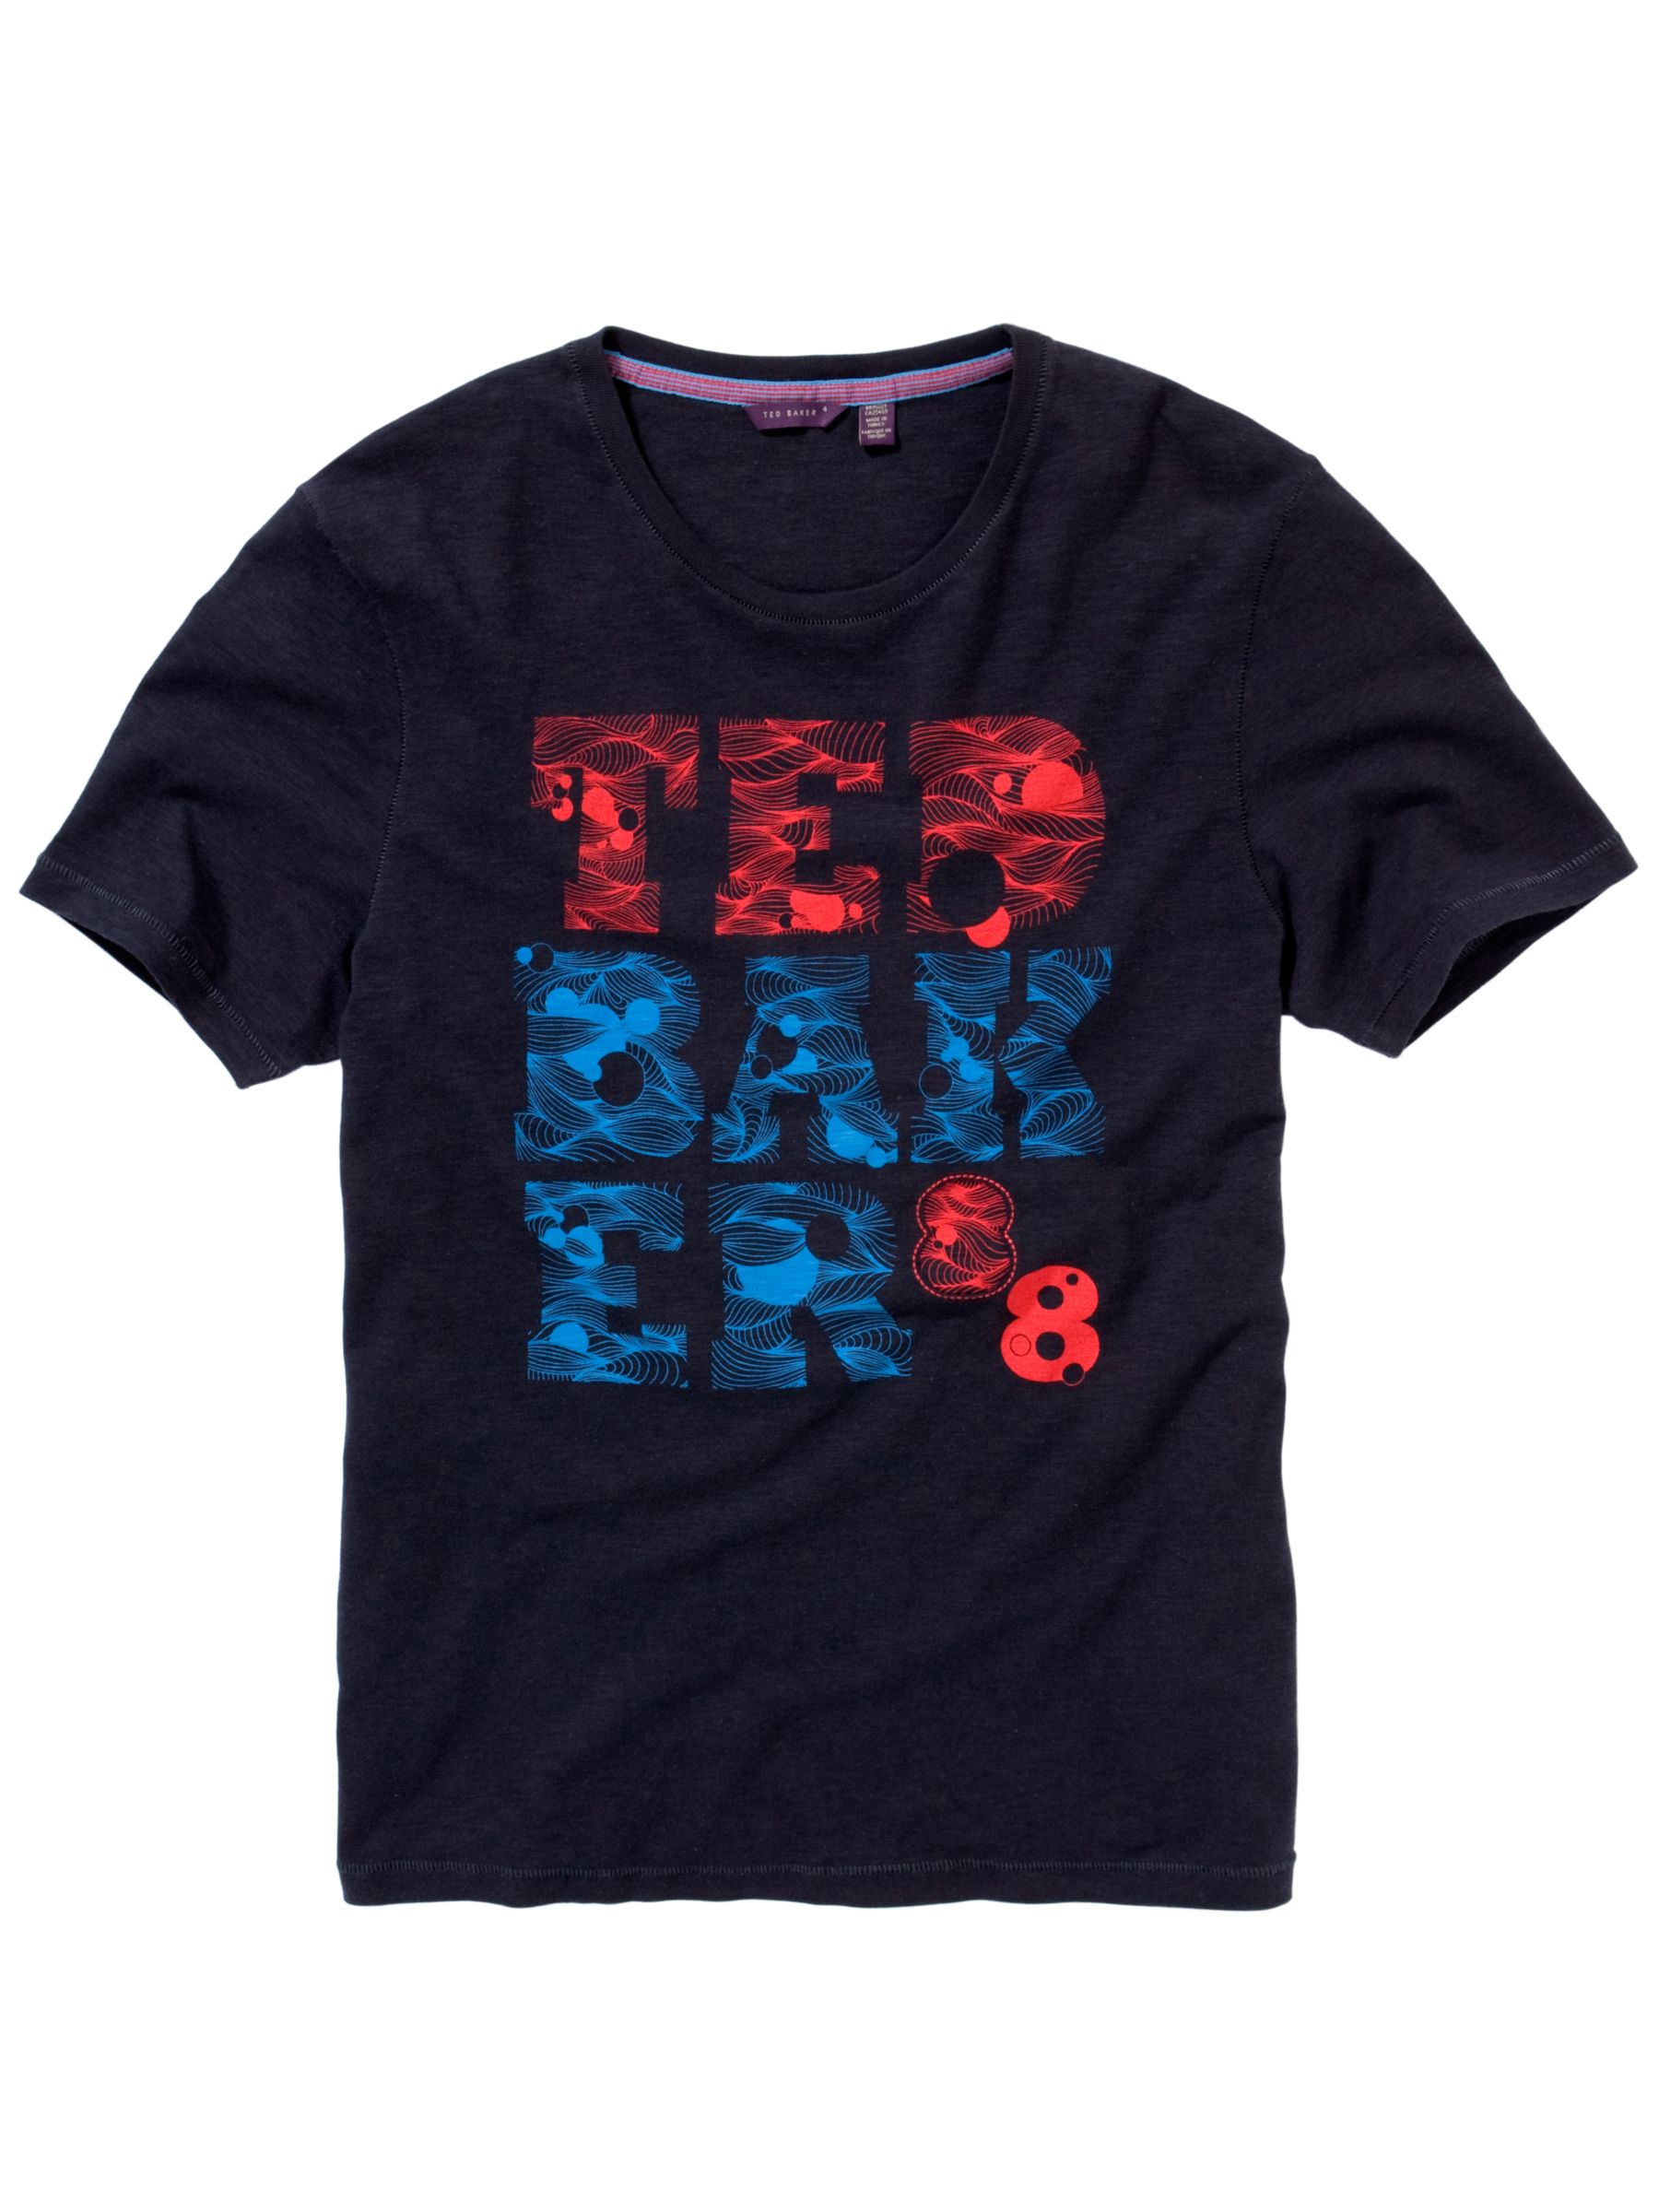 Ted Baker Swirl Brand T-Shirt, Navy , L